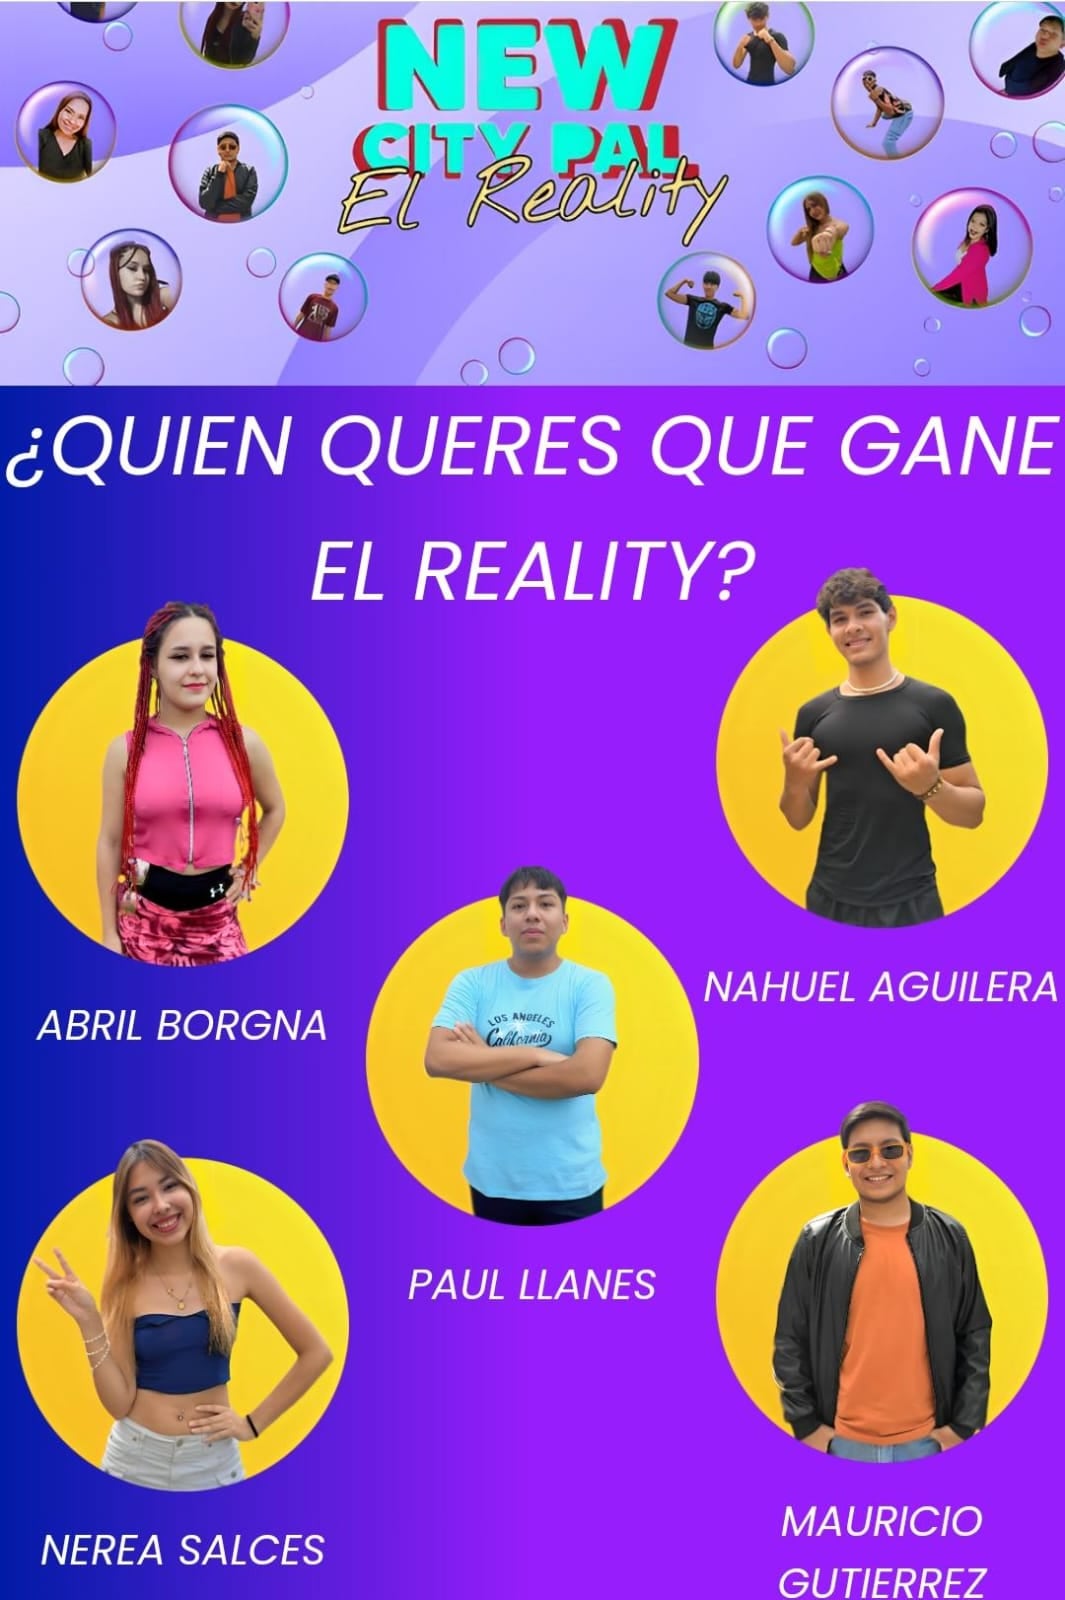 Este sábado culmina la segunda edición de New City Pal "El Reality" en Jujuy.